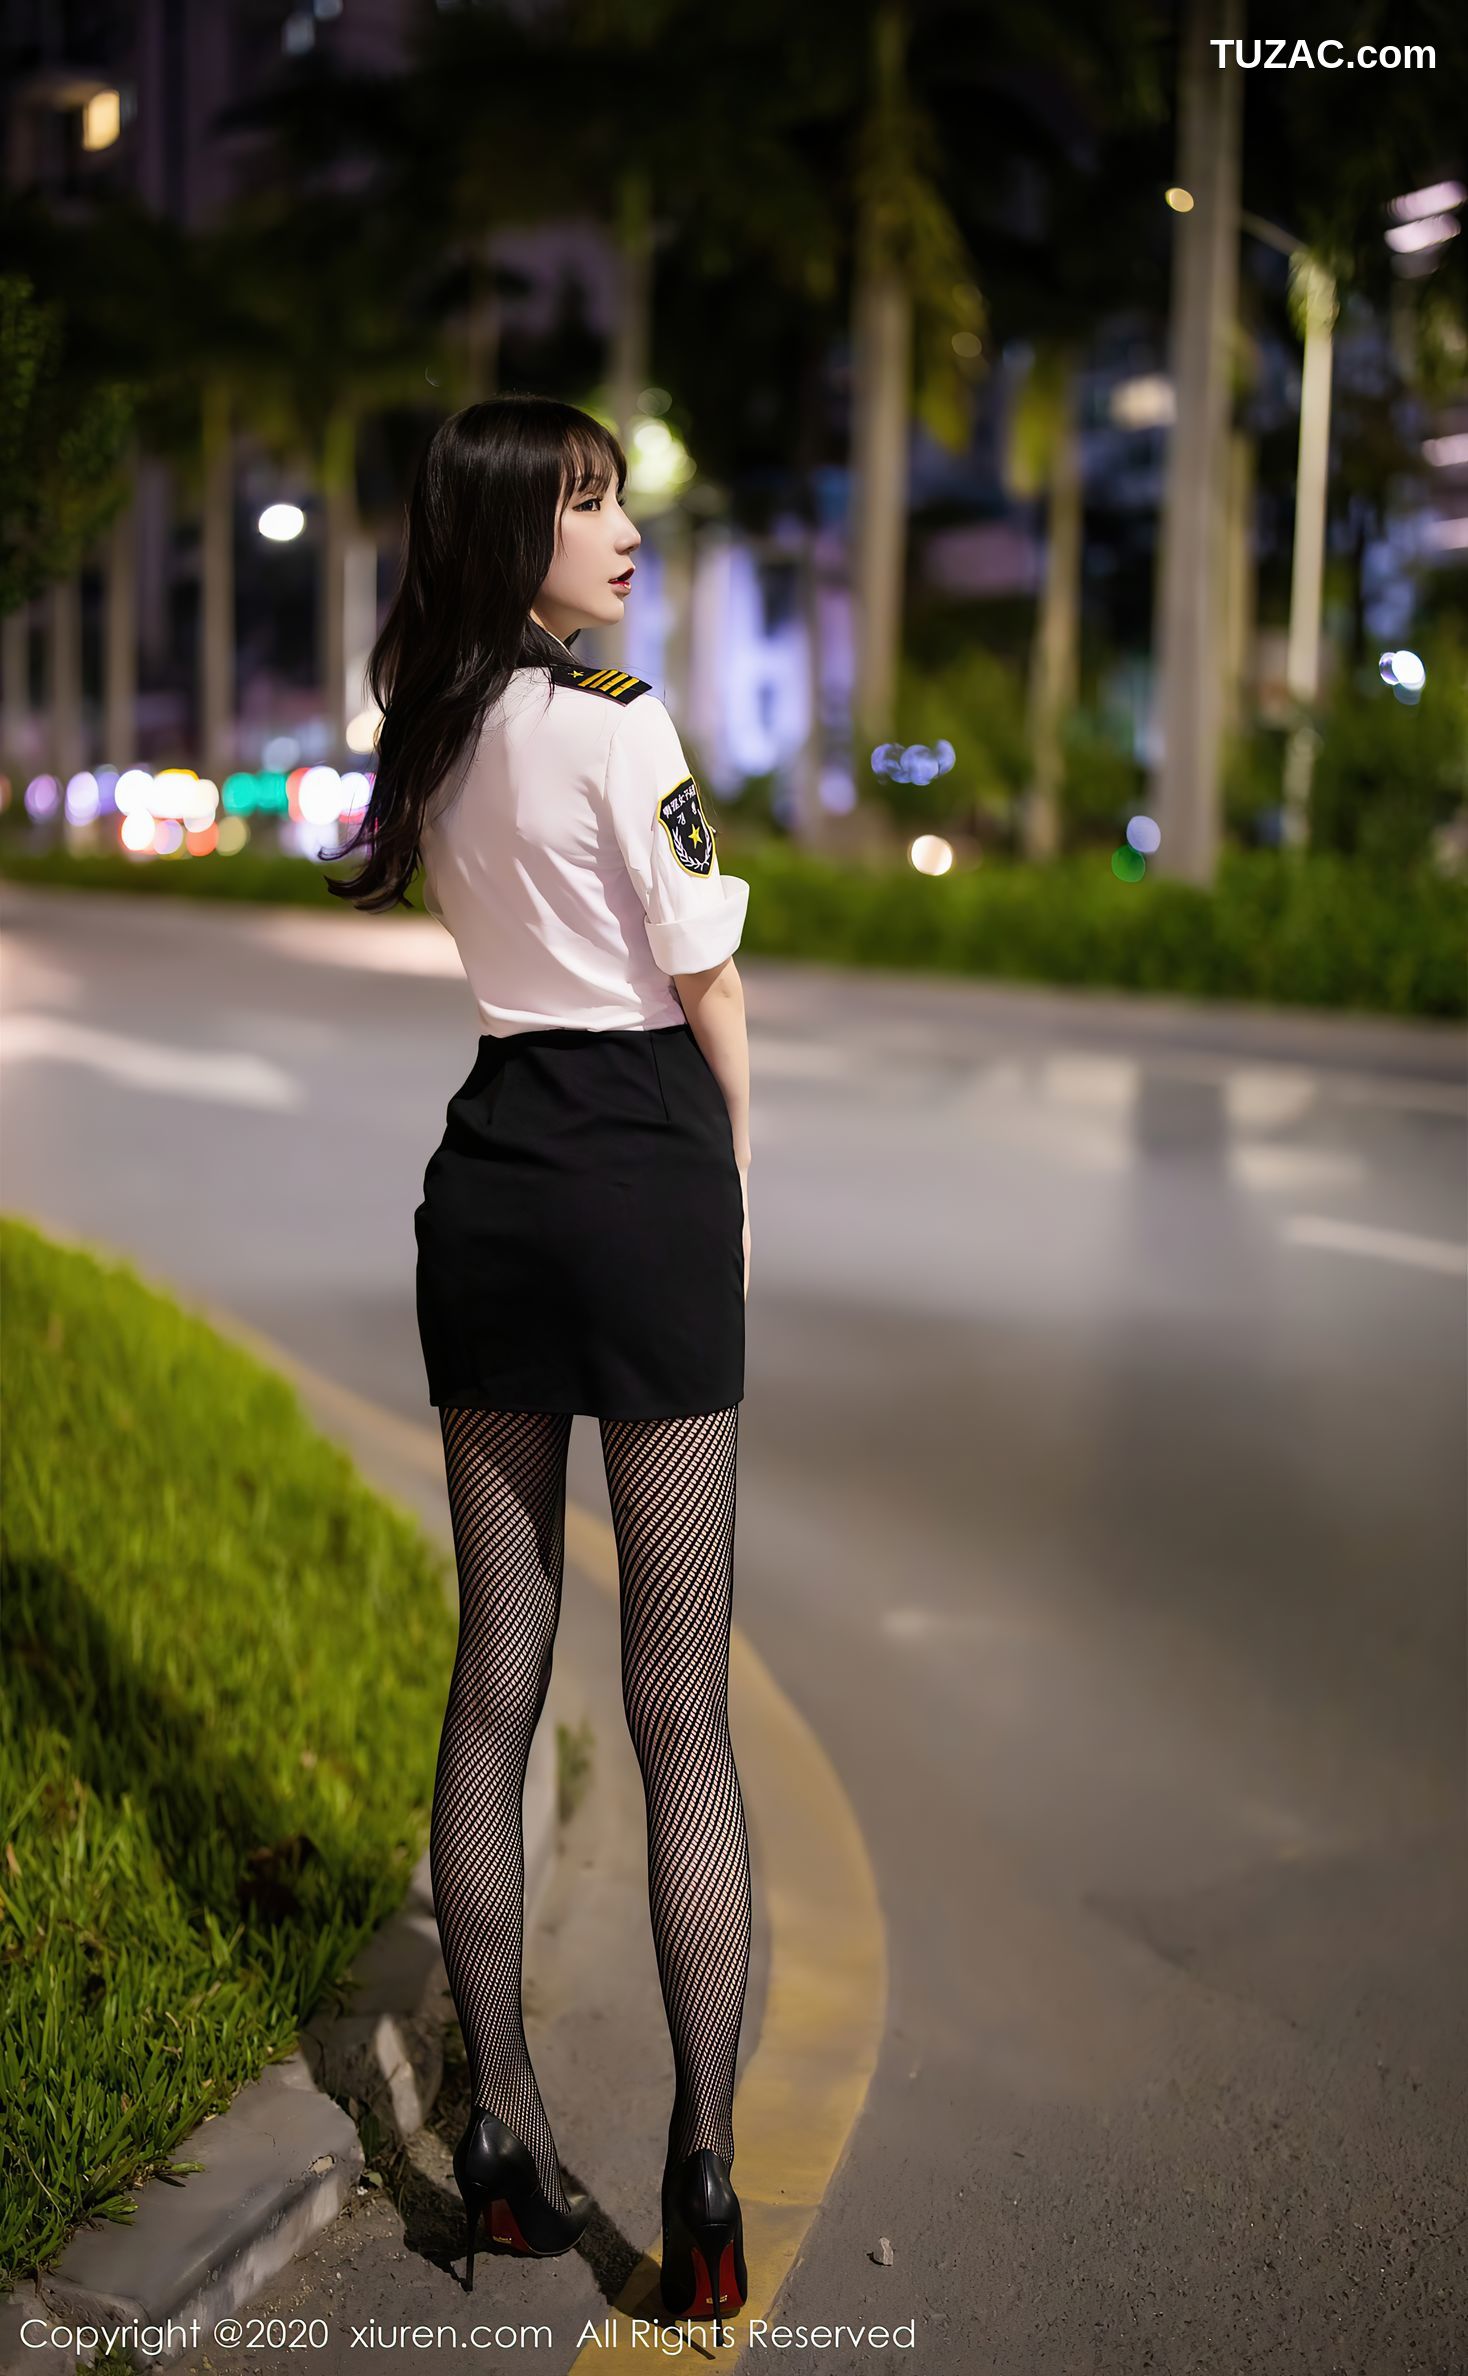 XiuRen秀人网-2820-周于希-《街头上的时尚魅力与制服》-2020.11.24